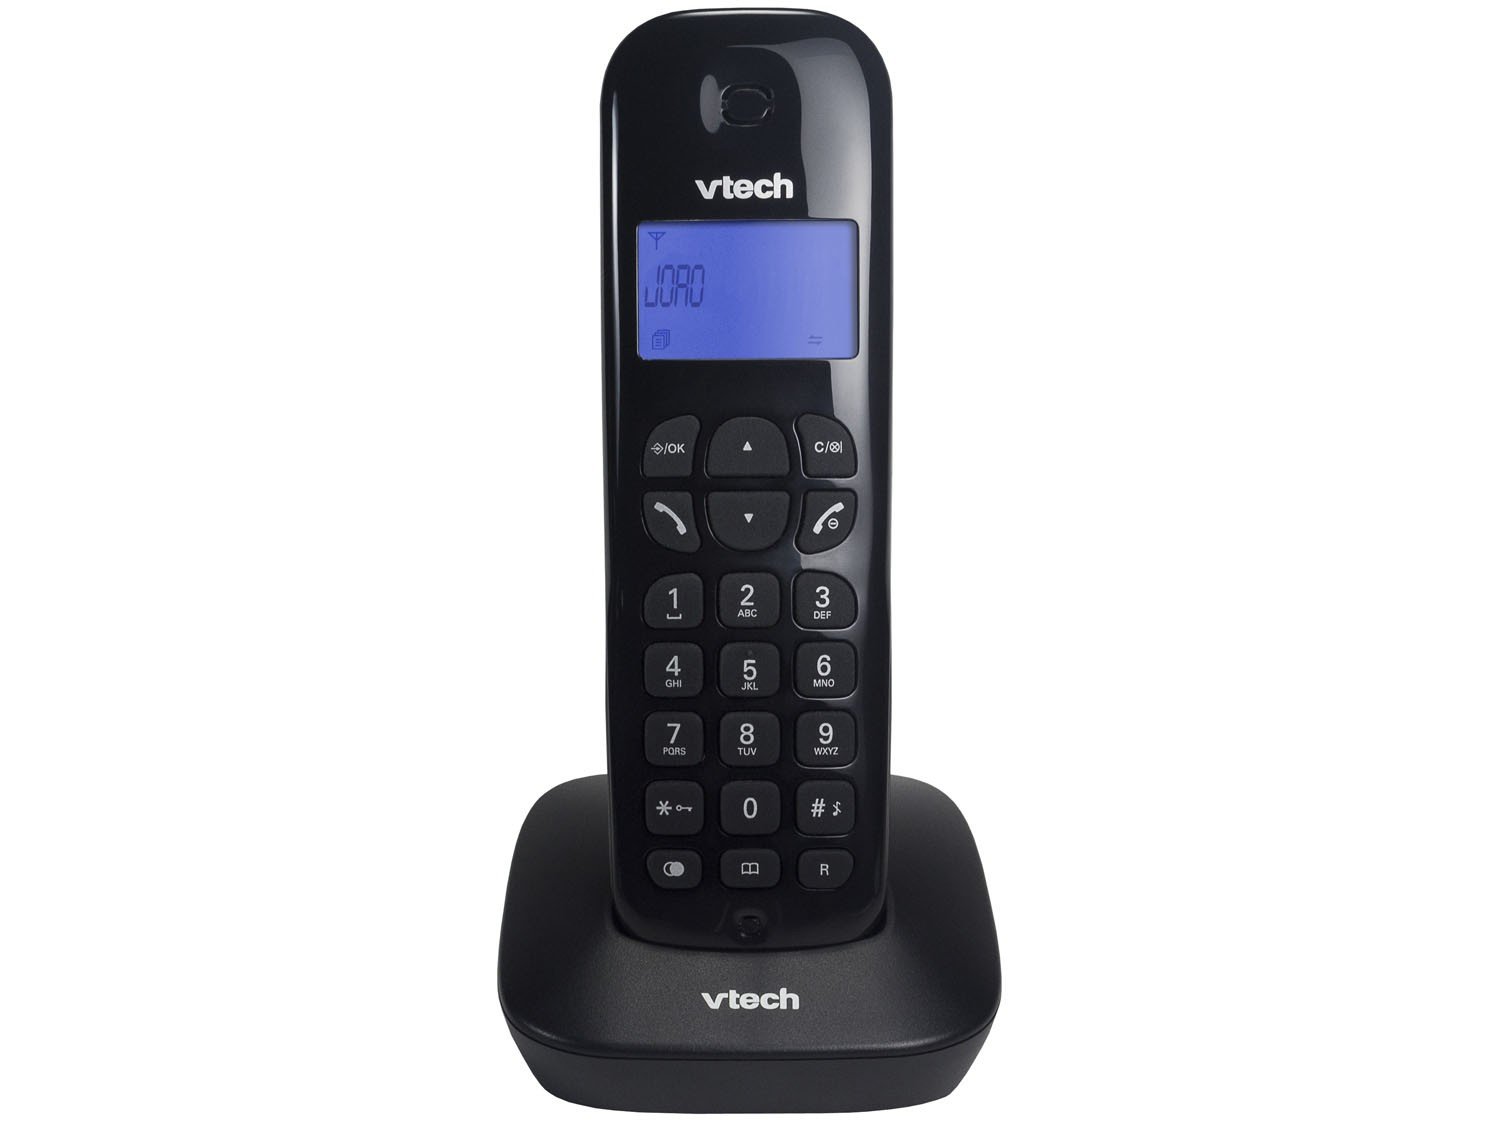 Telefone Digital Sem Fio Vtech VT680 com Identificador de Chamadas e Visor - Preto